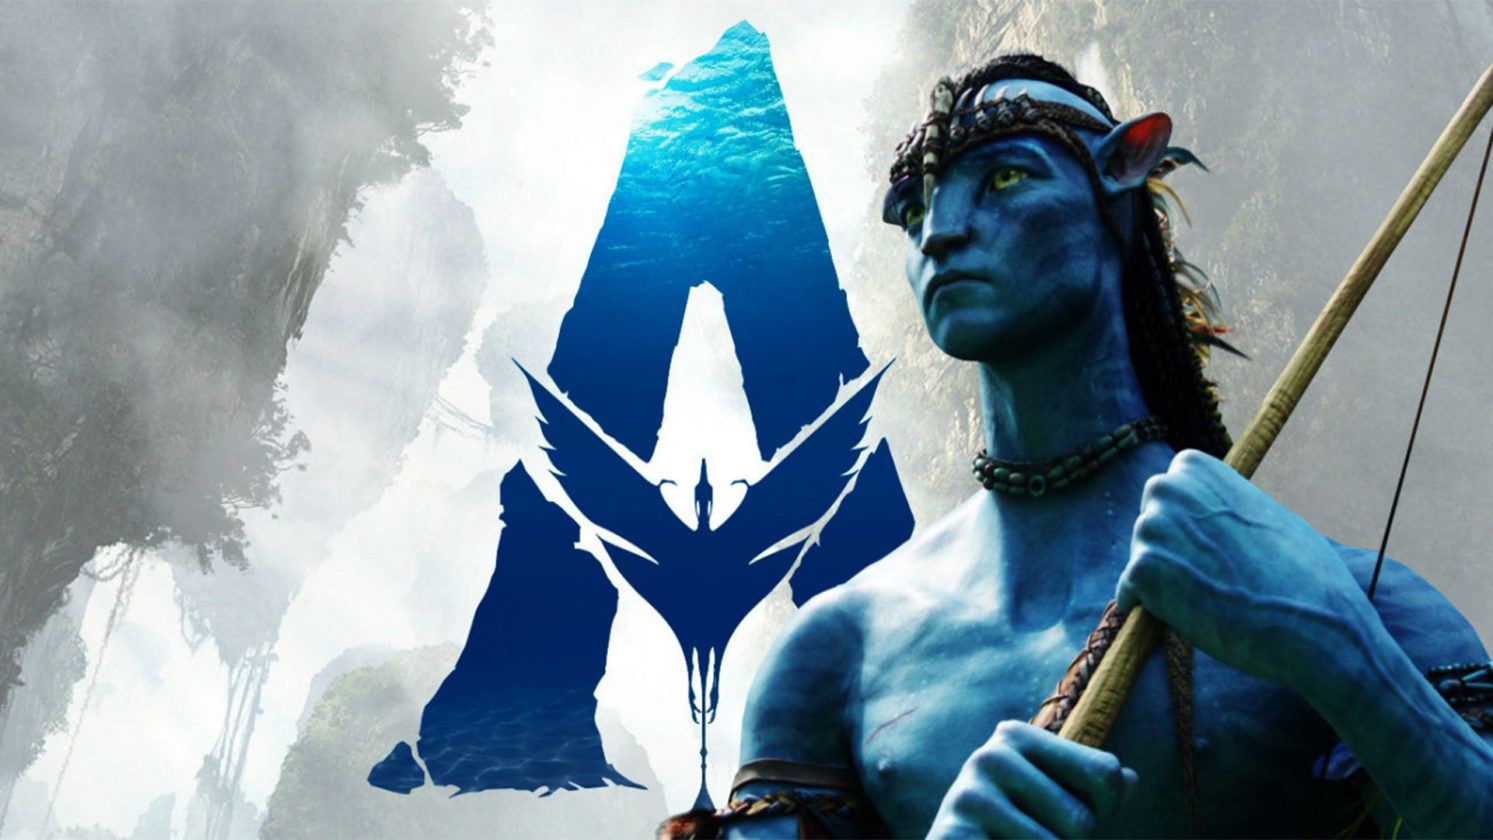 Avatar 2 Streaming Vf Avatar 2 Streaming Vf | AUTOMASITES